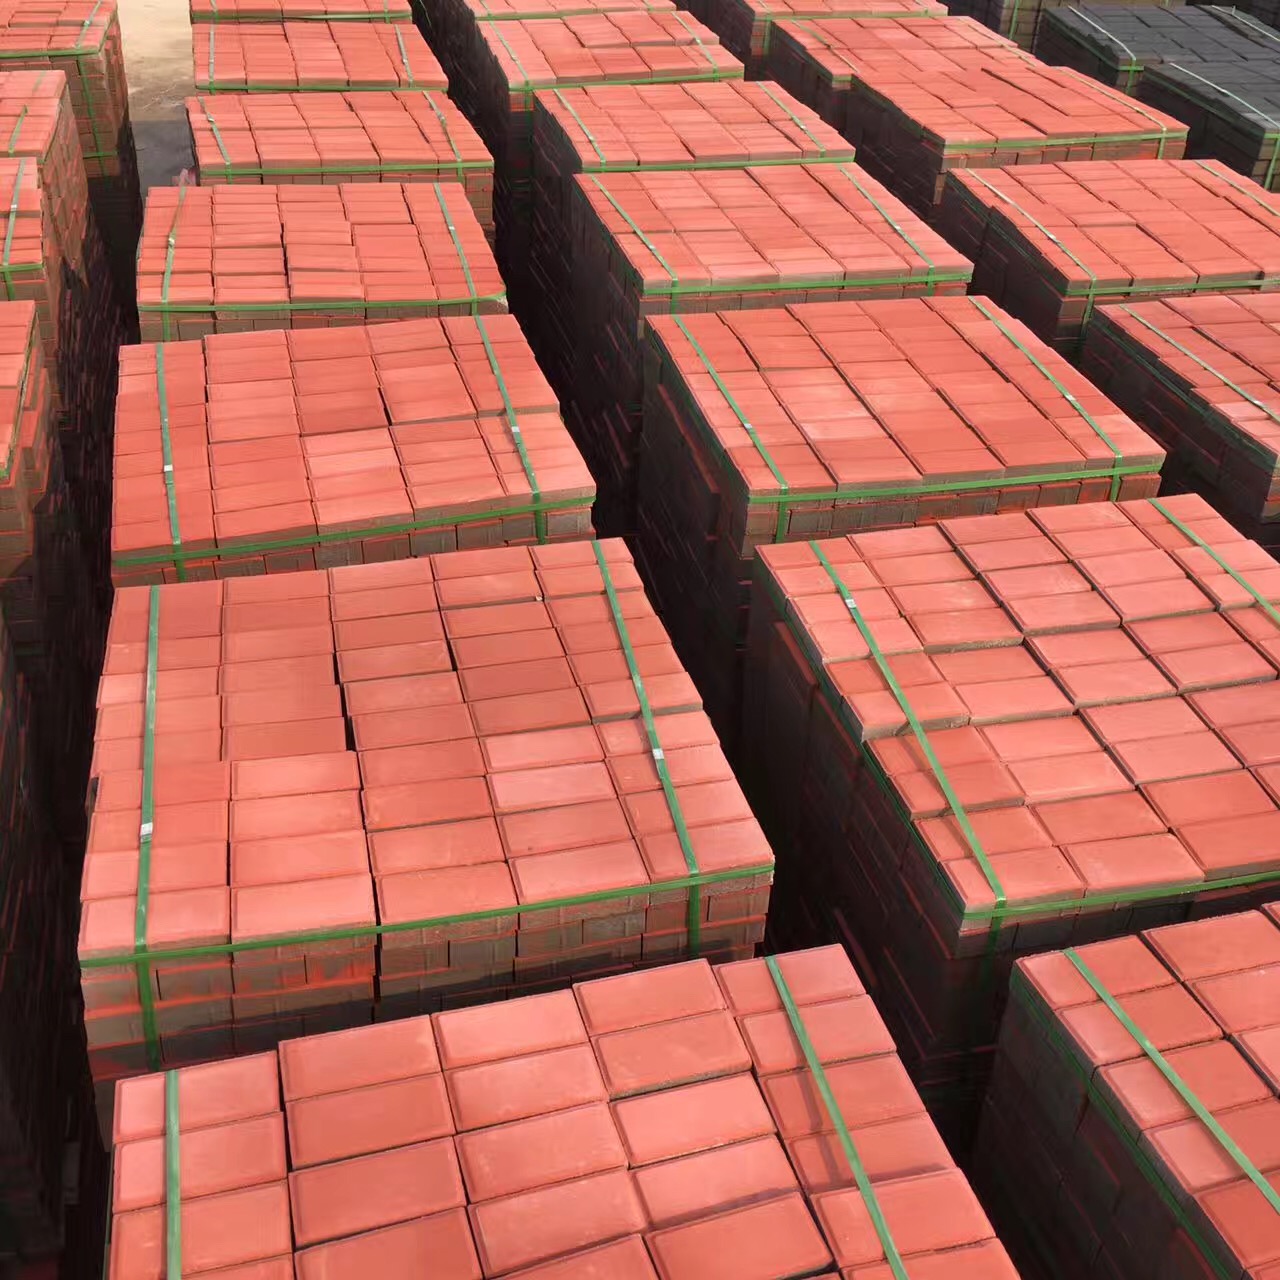 盐城荷兰砖厂家/地址/价格/规格/尺寸 荷兰砖一个平方多少块 面包砖 苏布洛克砖 透水砖 彩砖 广场砖 混凝土路面砖 200x100x60mm